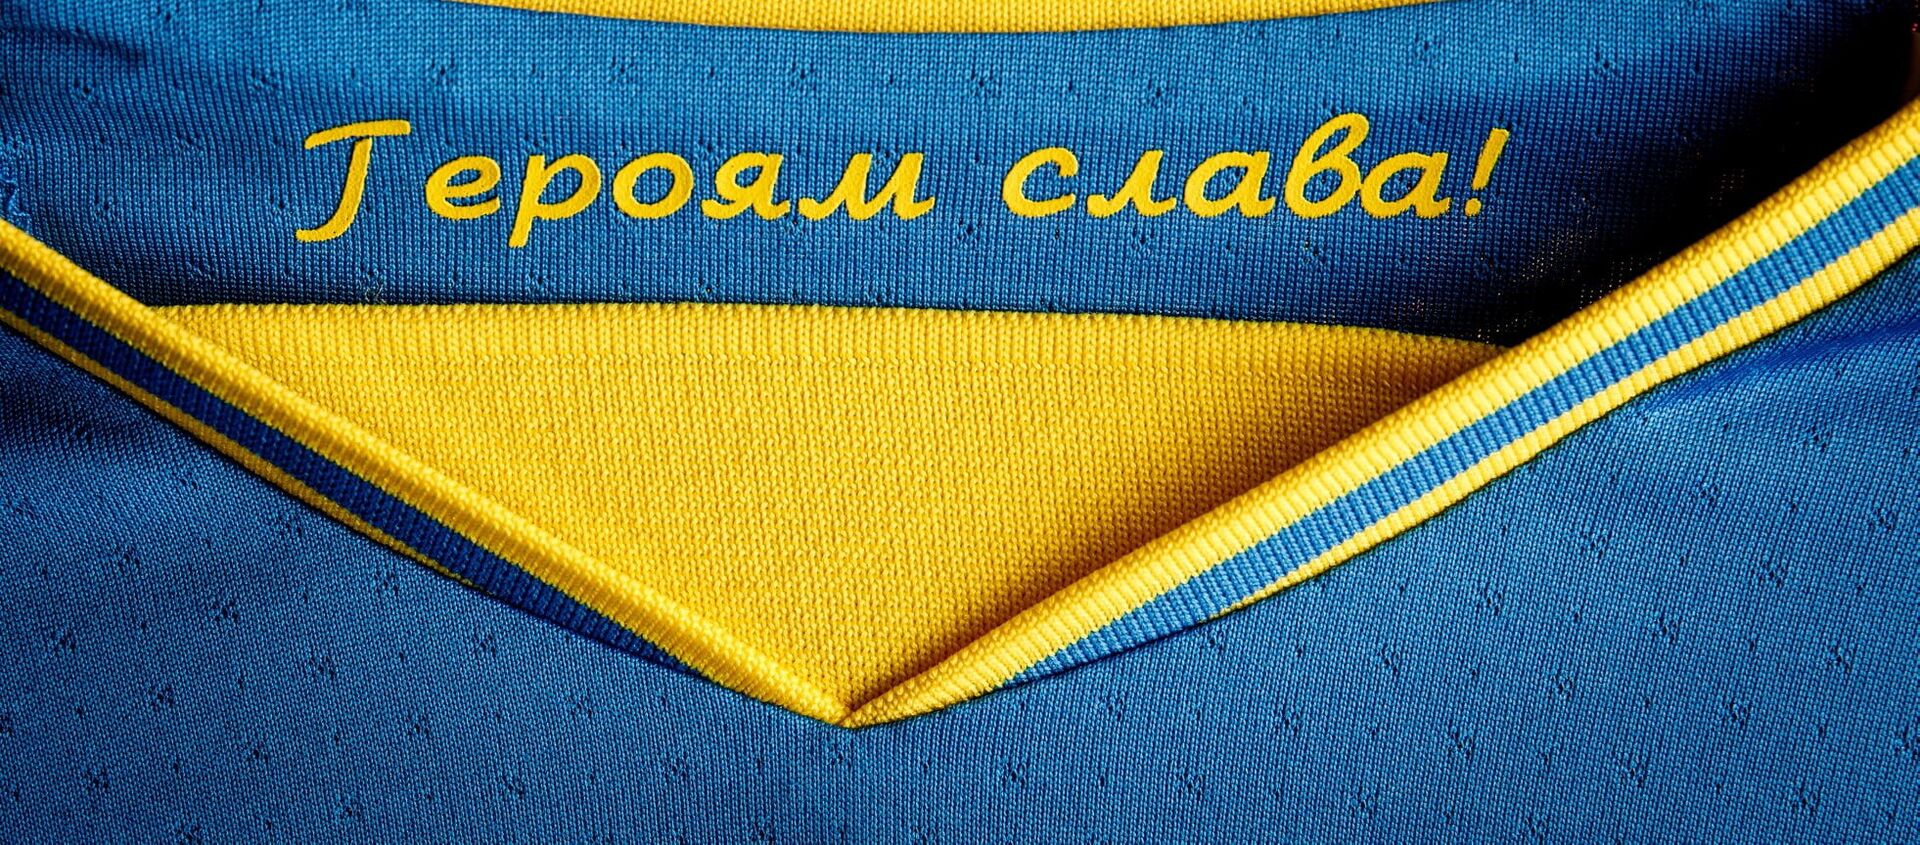  Đồng phục của đội tuyển Ukraina tại Giải vô địch bóng đá châu Âu EURO 2020 với dòng chữ Vinh quang anh hùng!. - Sputnik Việt Nam, 1920, 10.06.2021